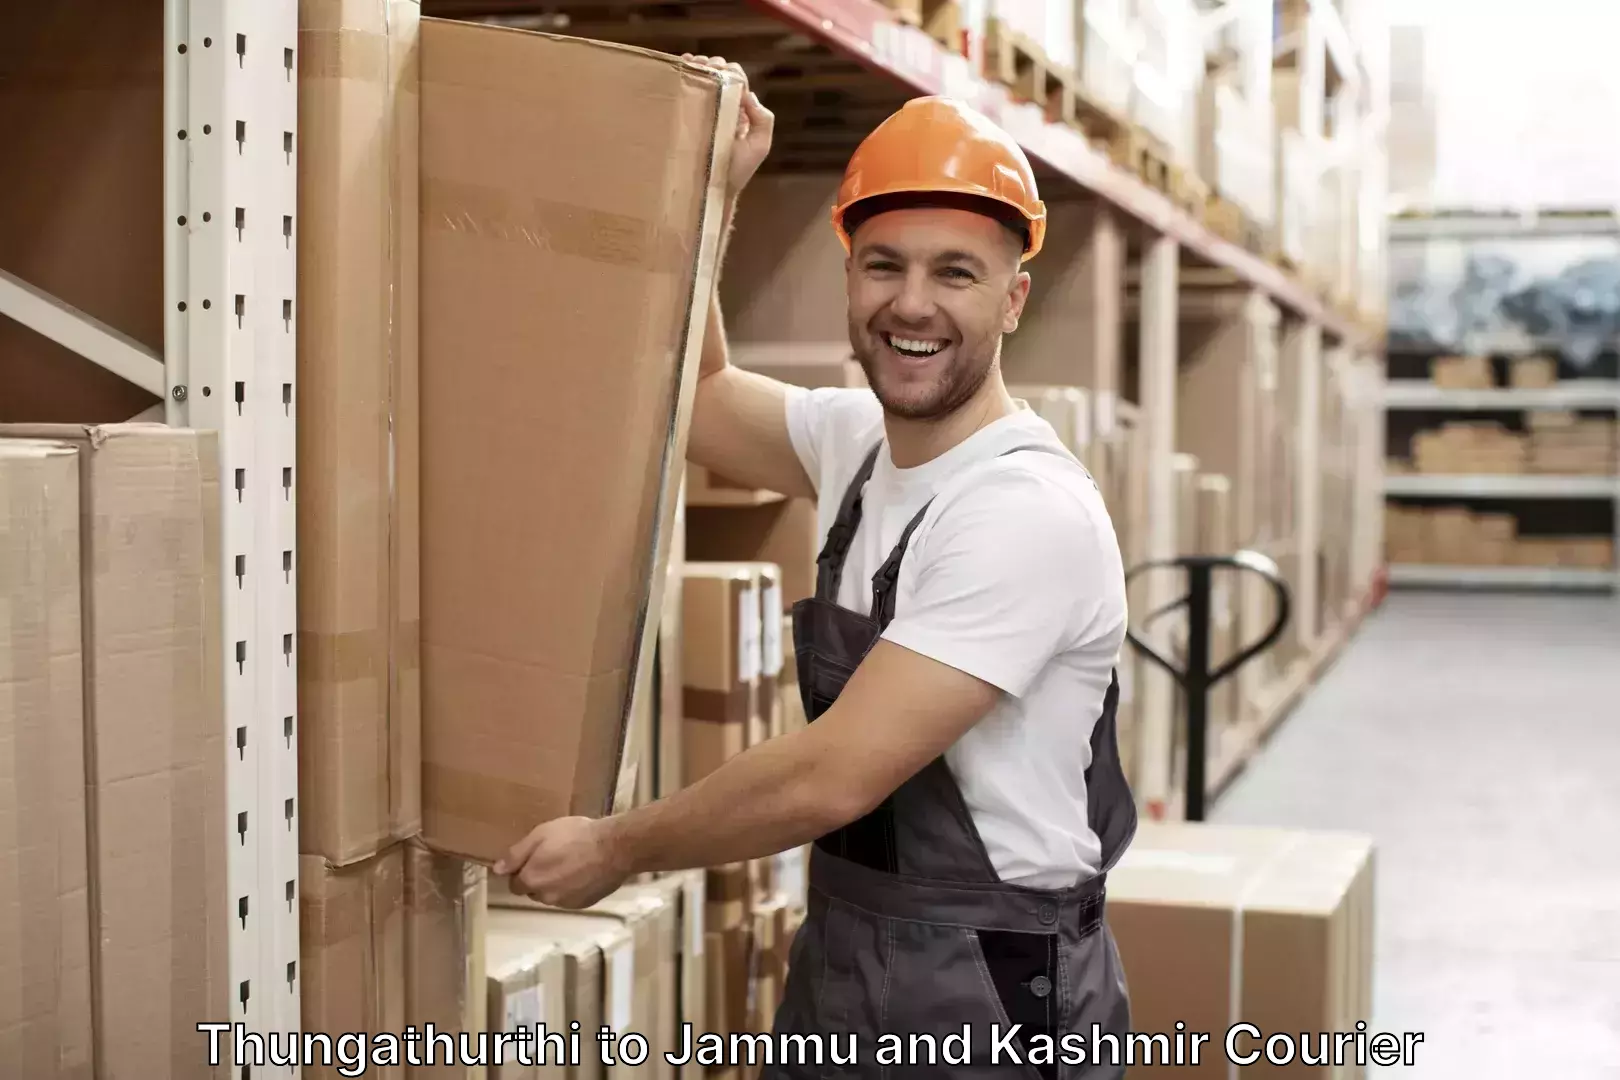 Luggage shipment logistics Thungathurthi to University of Jammu